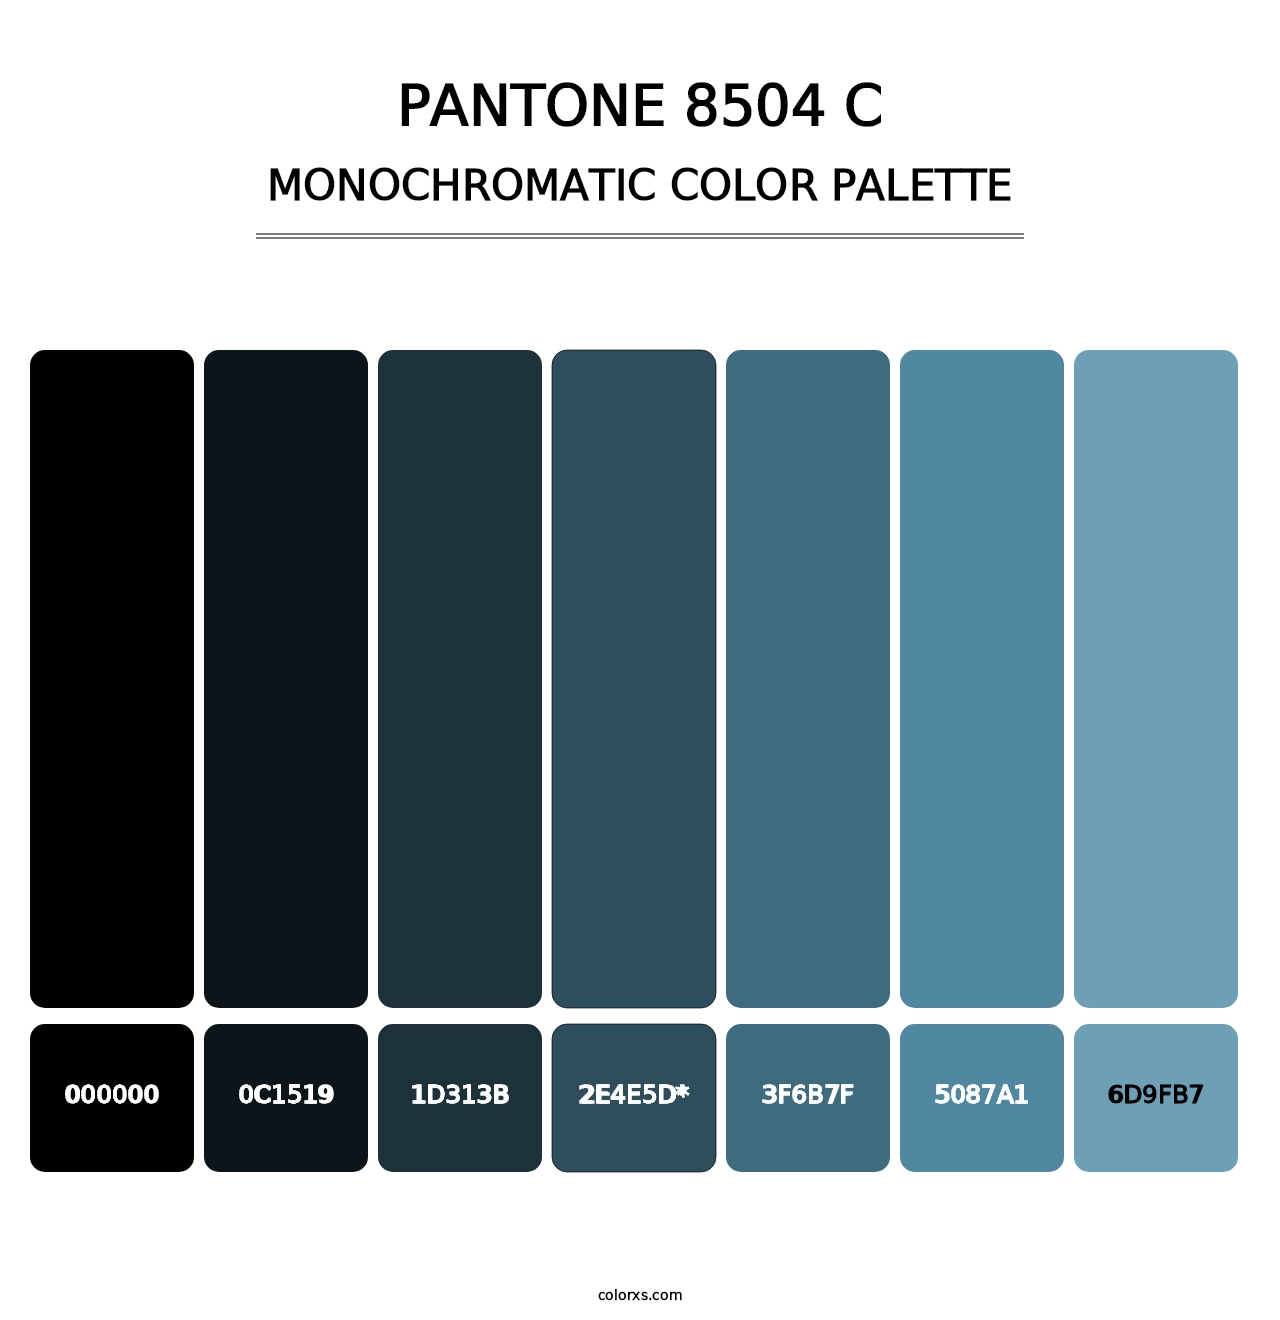 PANTONE 8504 C - Monochromatic Color Palette